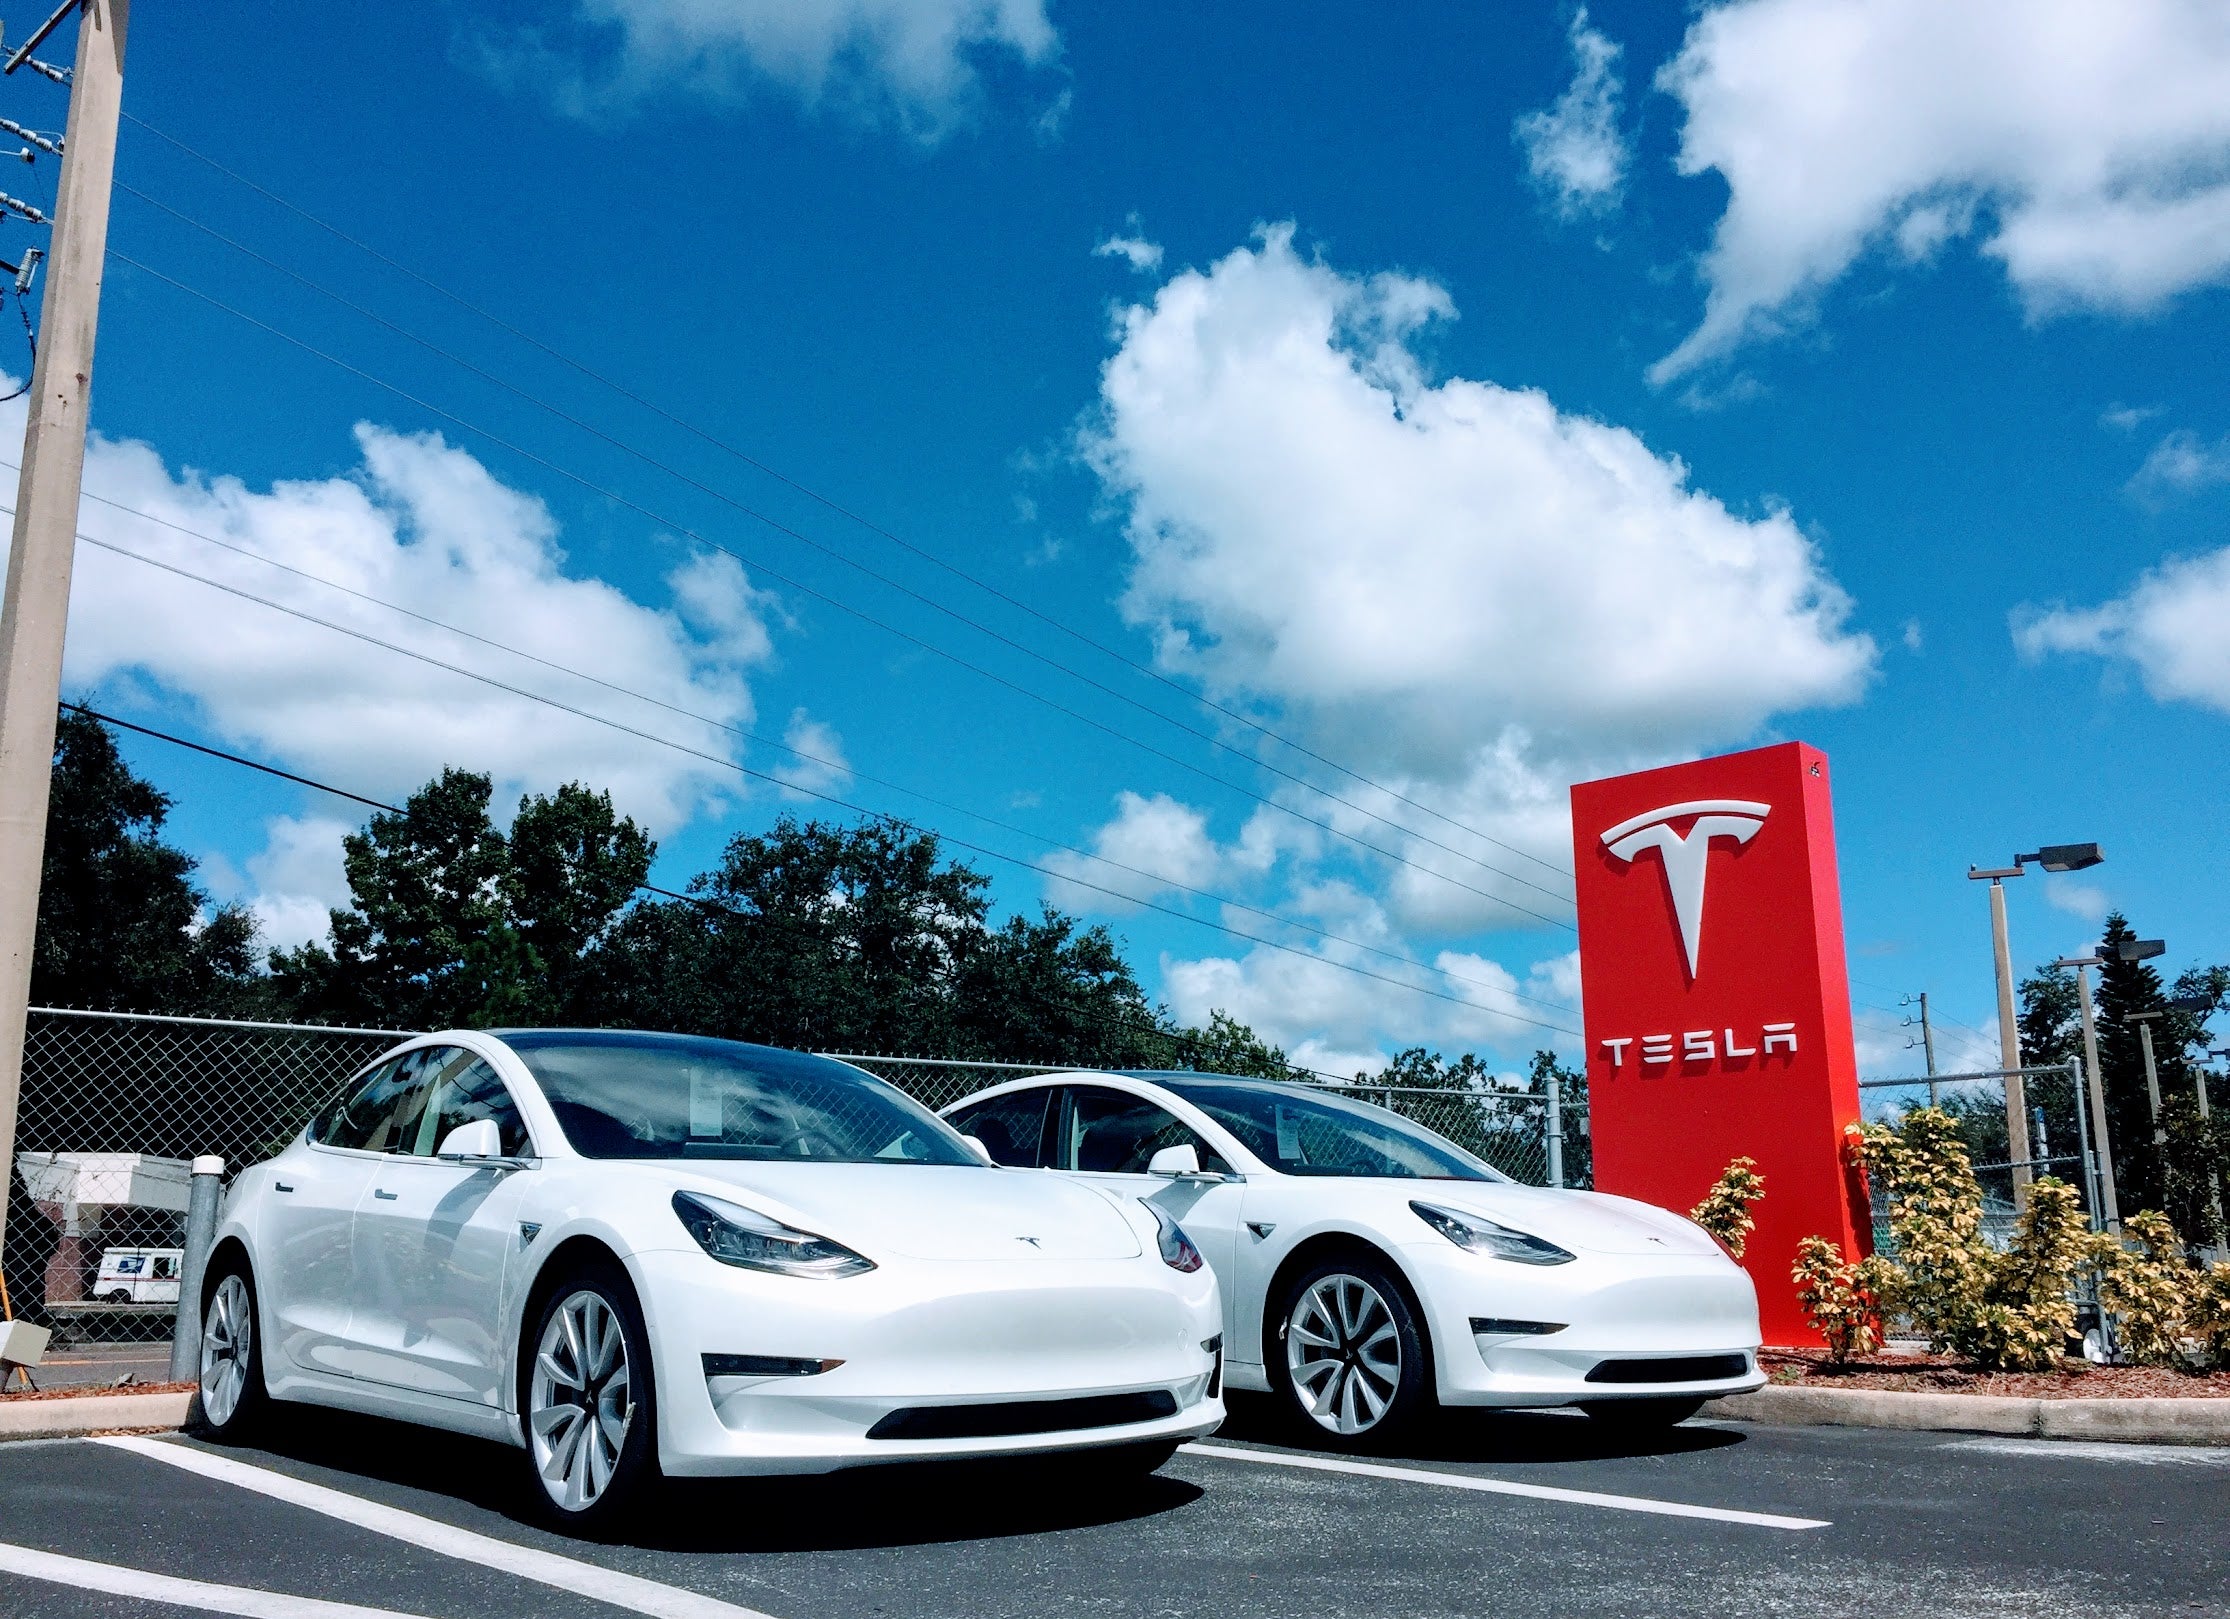 Tesla, hãng xe điện thành công nhất nước Mỹ cũng từng có thời điểm lao đao